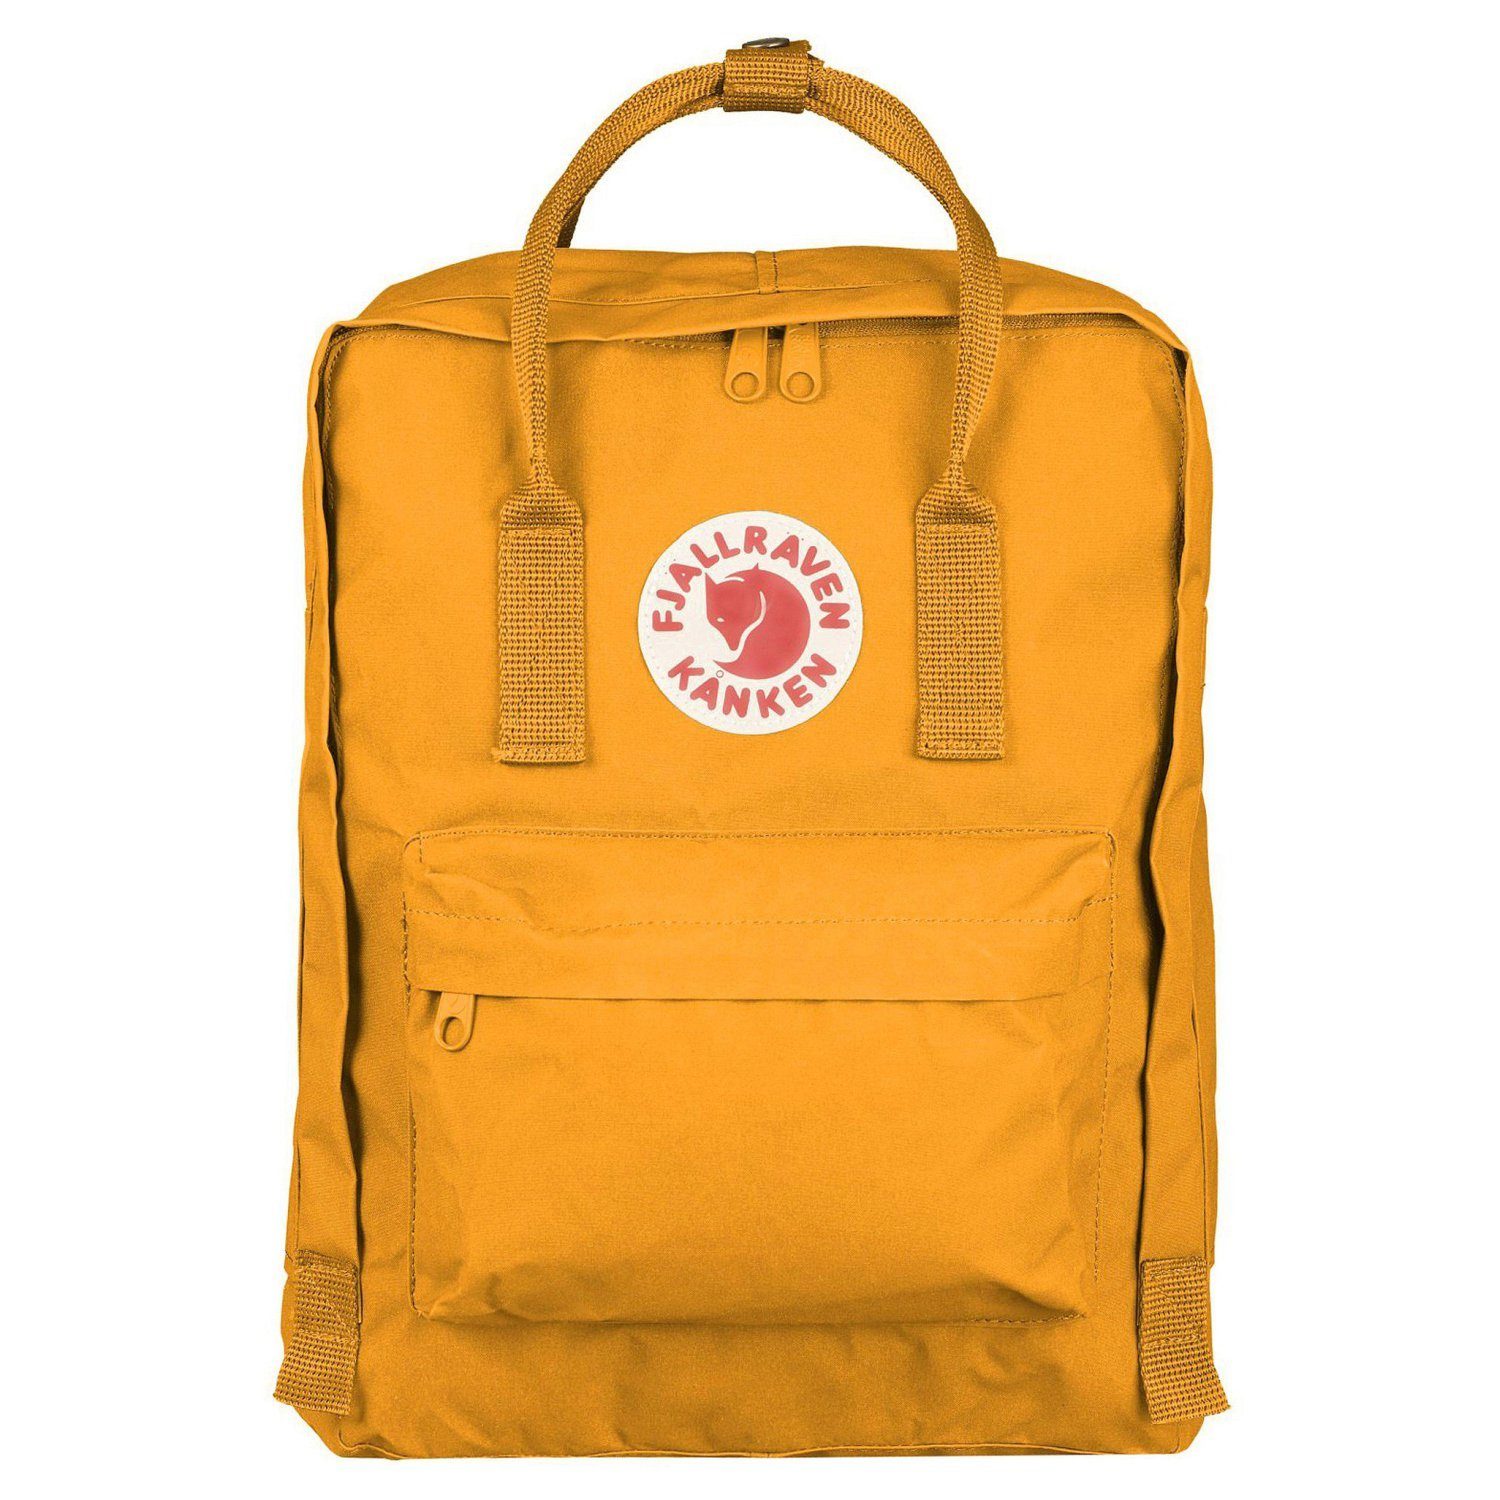 Rucksack in gelb online kaufen | OTTO